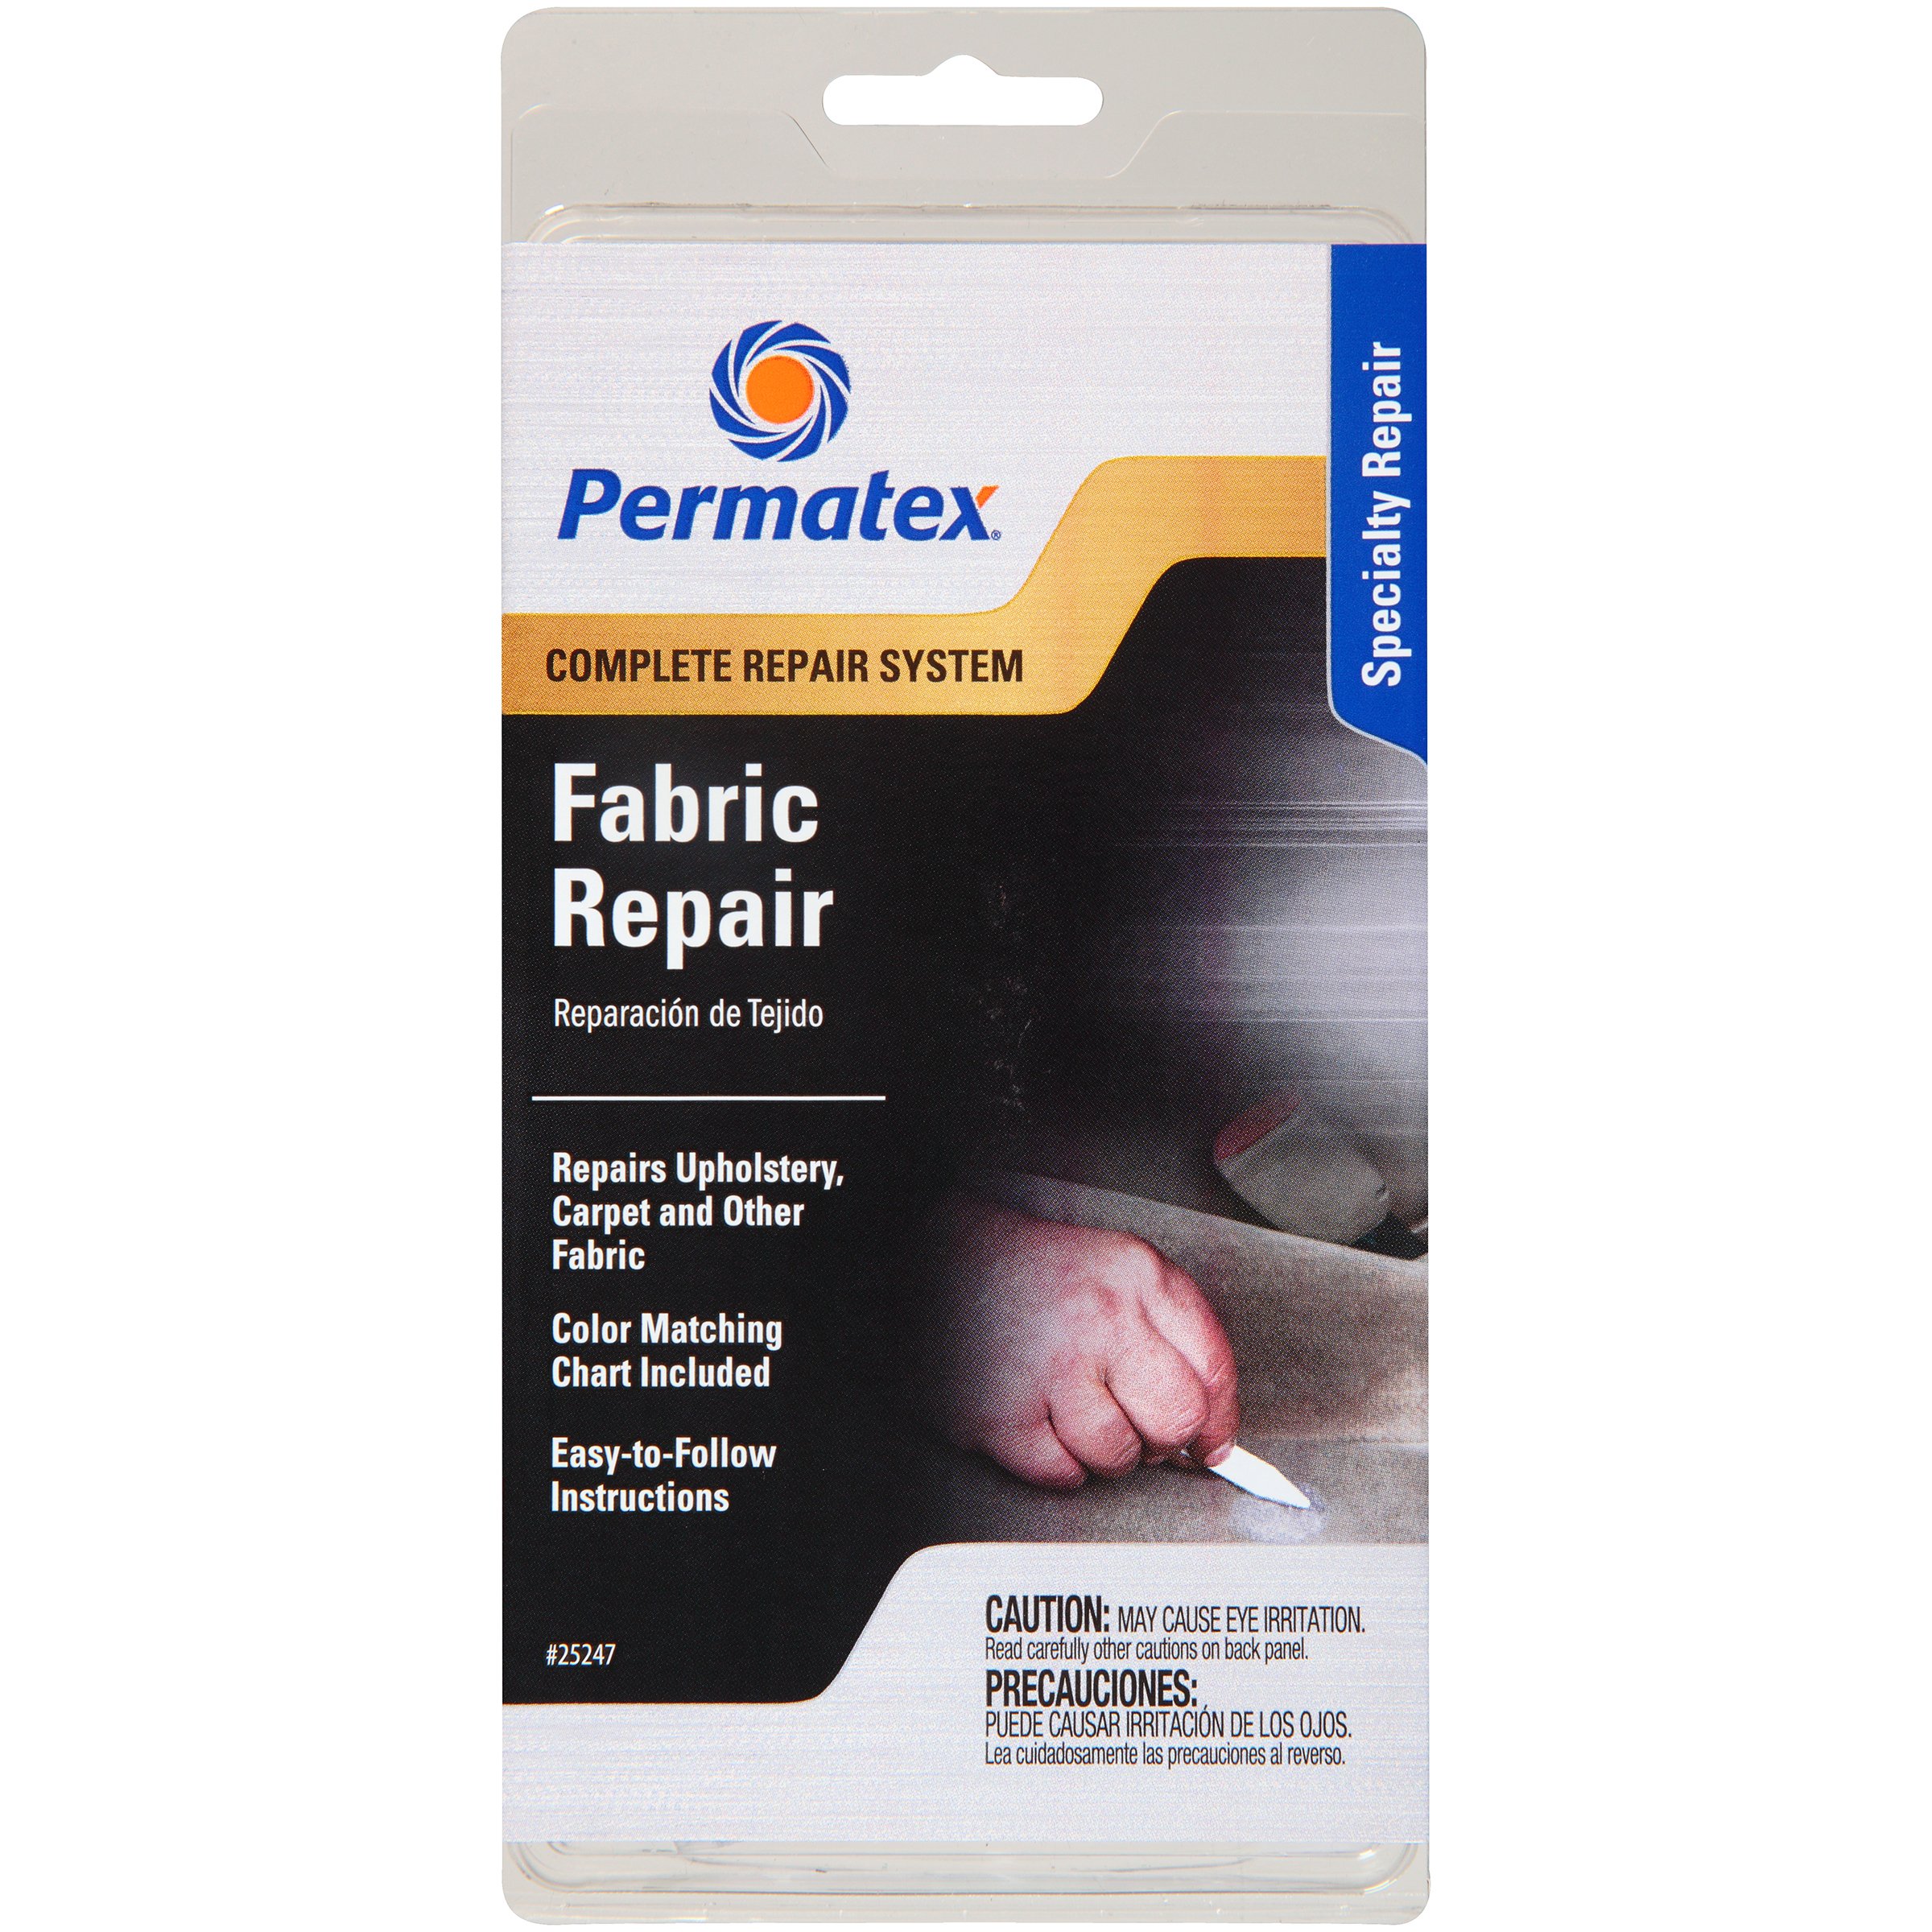 Permatex 25247 Fabric Repair Kit, Single Unit $6.00 Amazon